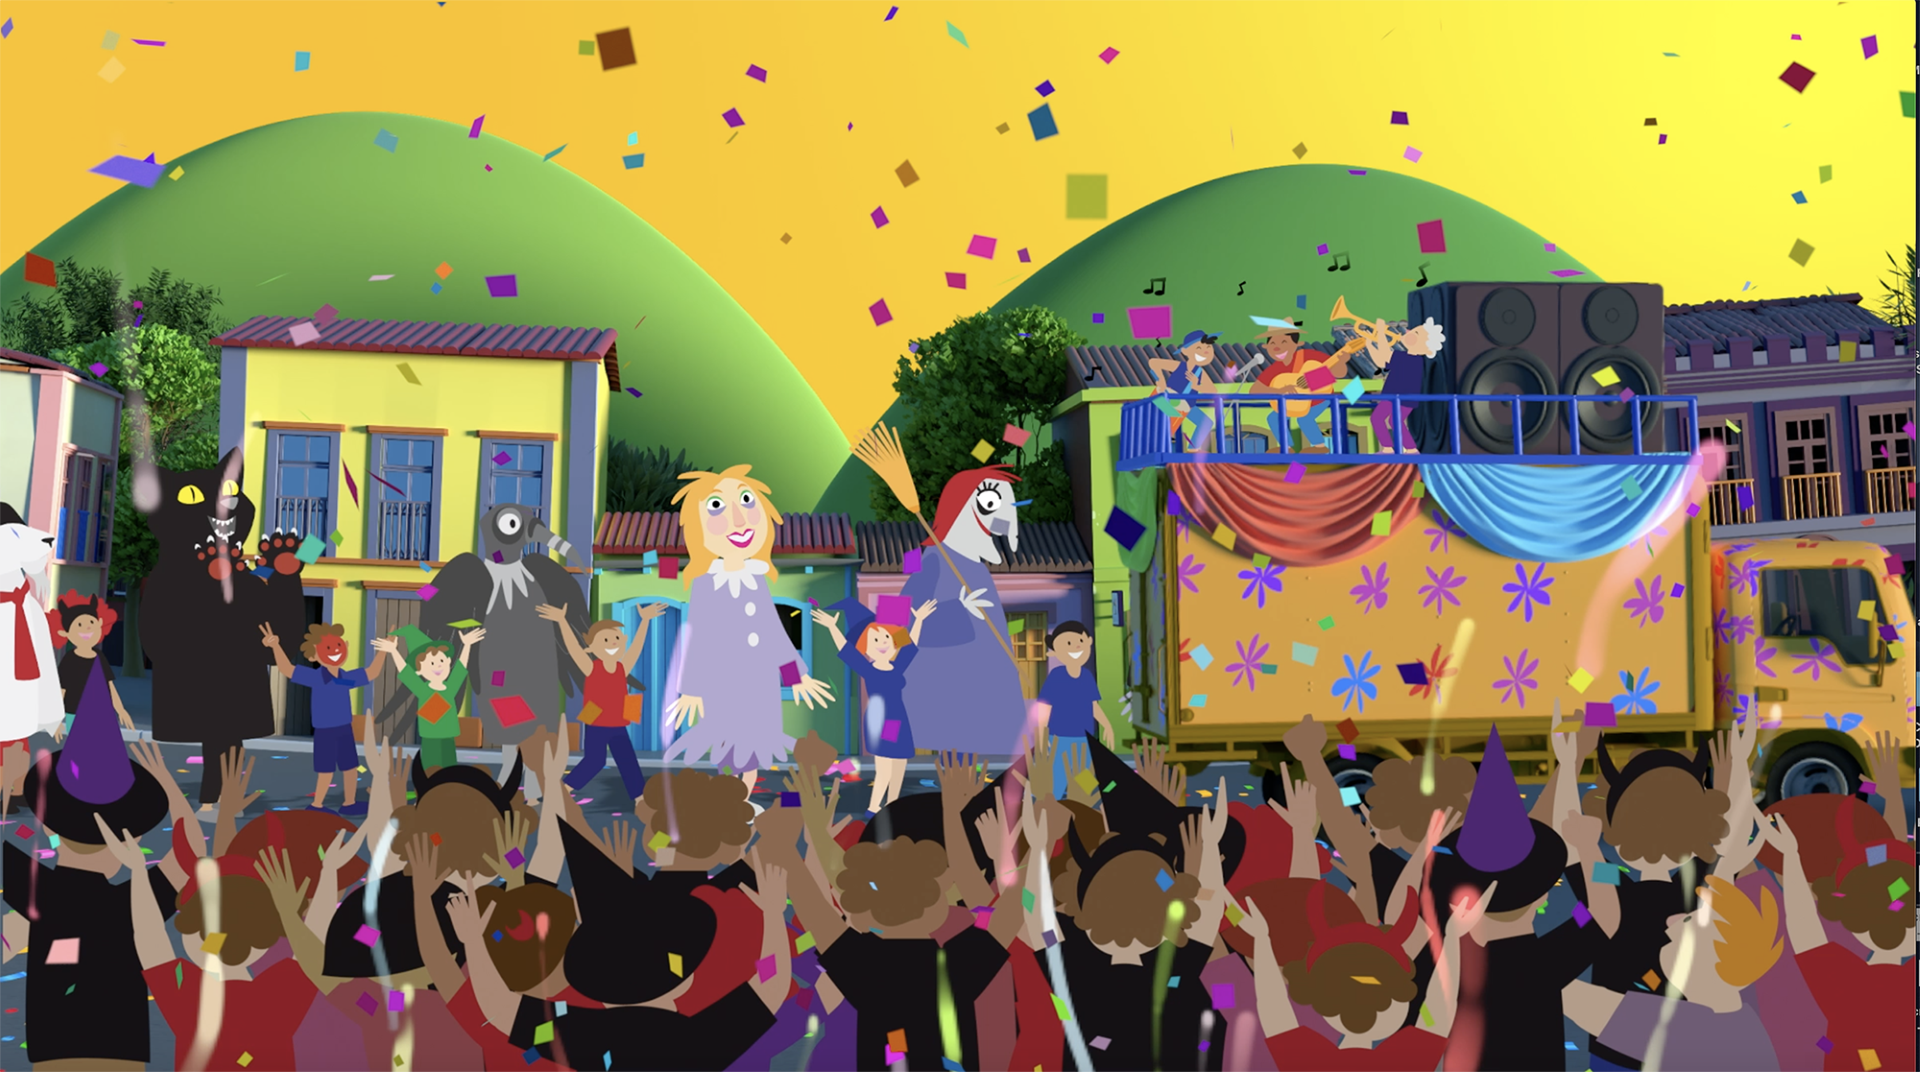 Festas de São Luiz do Paraitinga viram série de animação